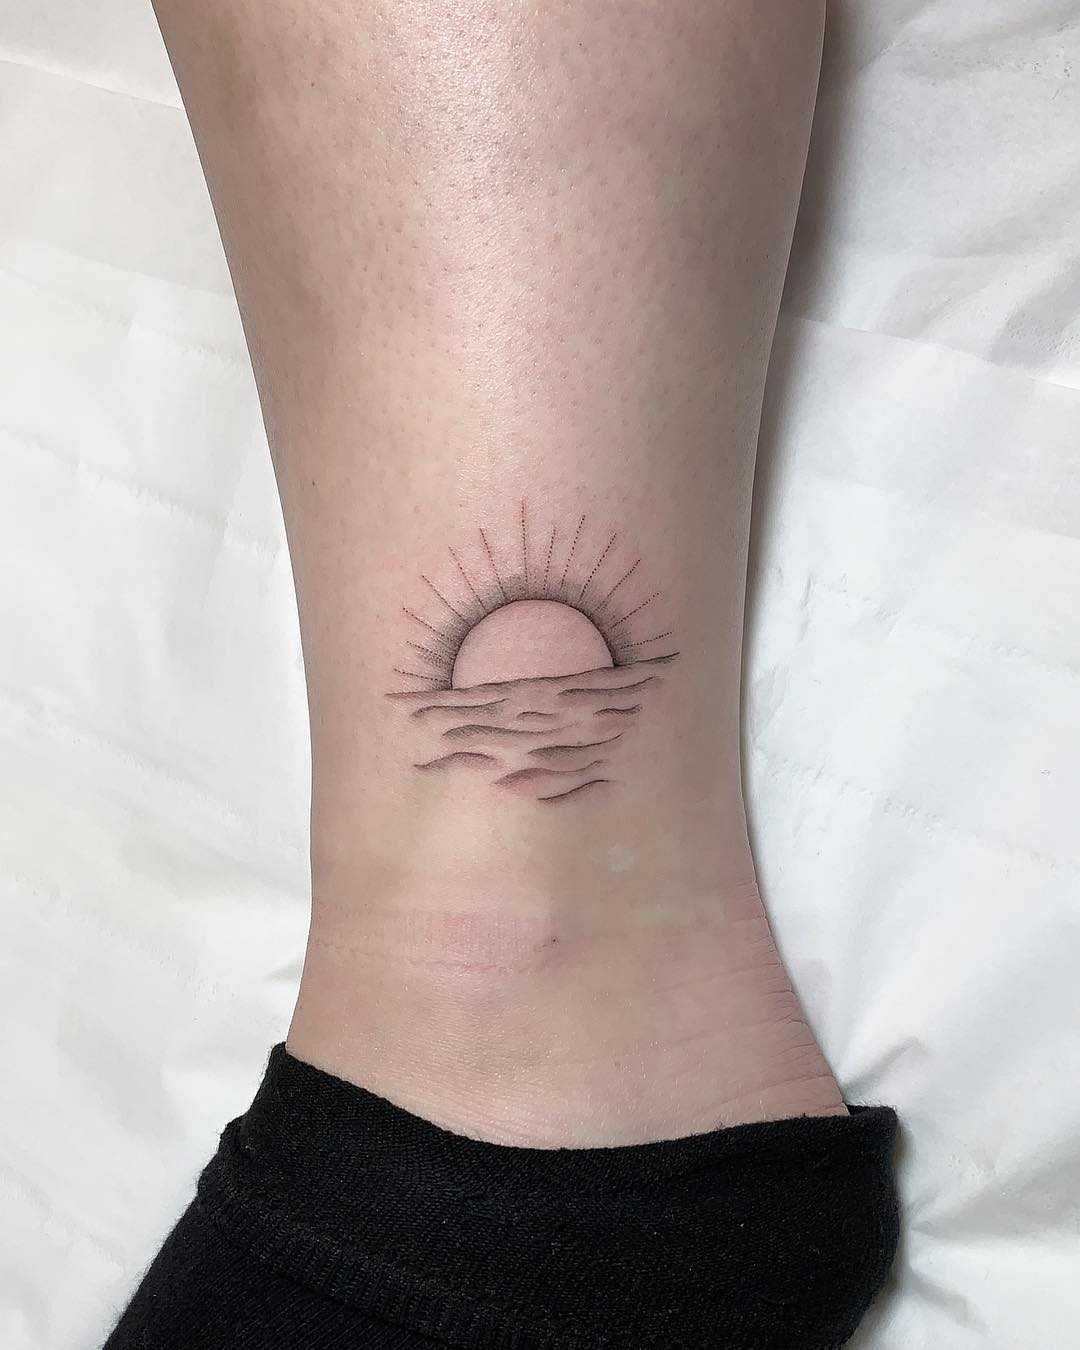 Sunrise tattoo | Single line tattoo, Sunrise tattoo, Line tattoos